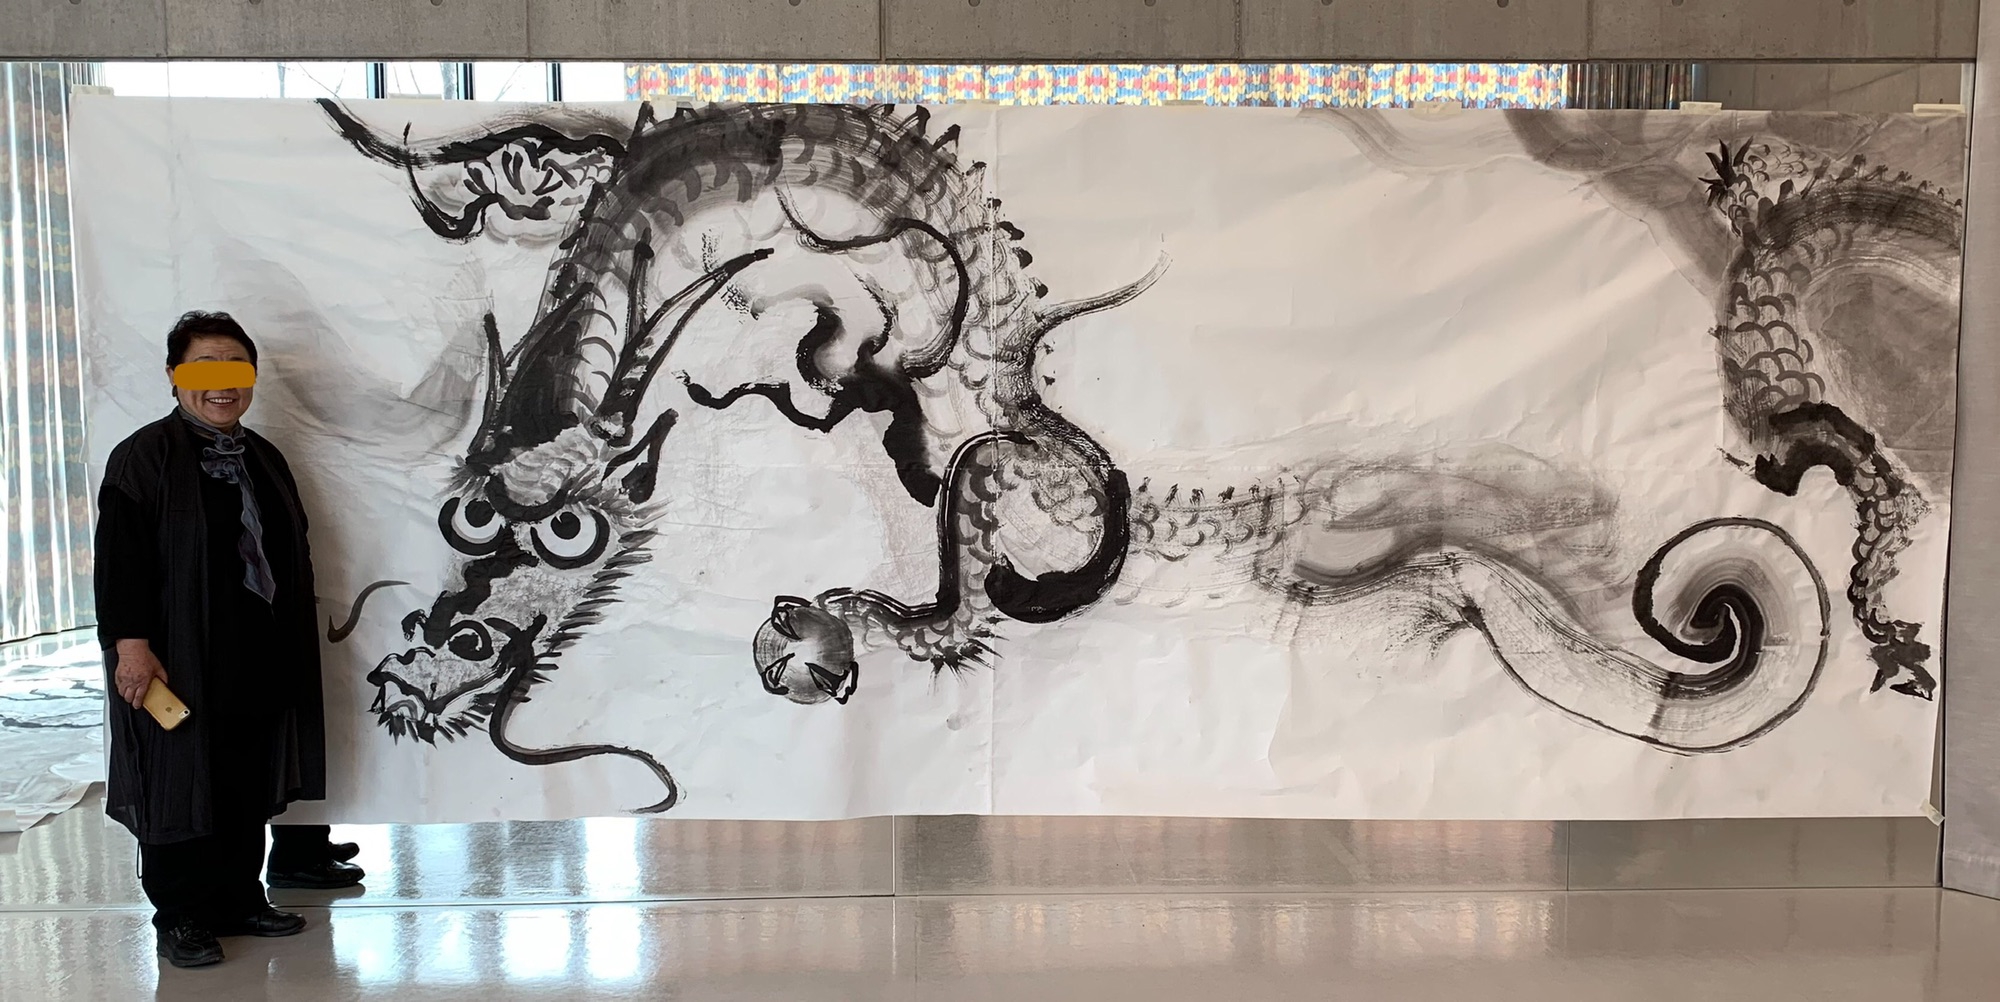 水墨画講座 2 5mの巨大和紙に龍を描く 荒井水墨画教室ホームページ